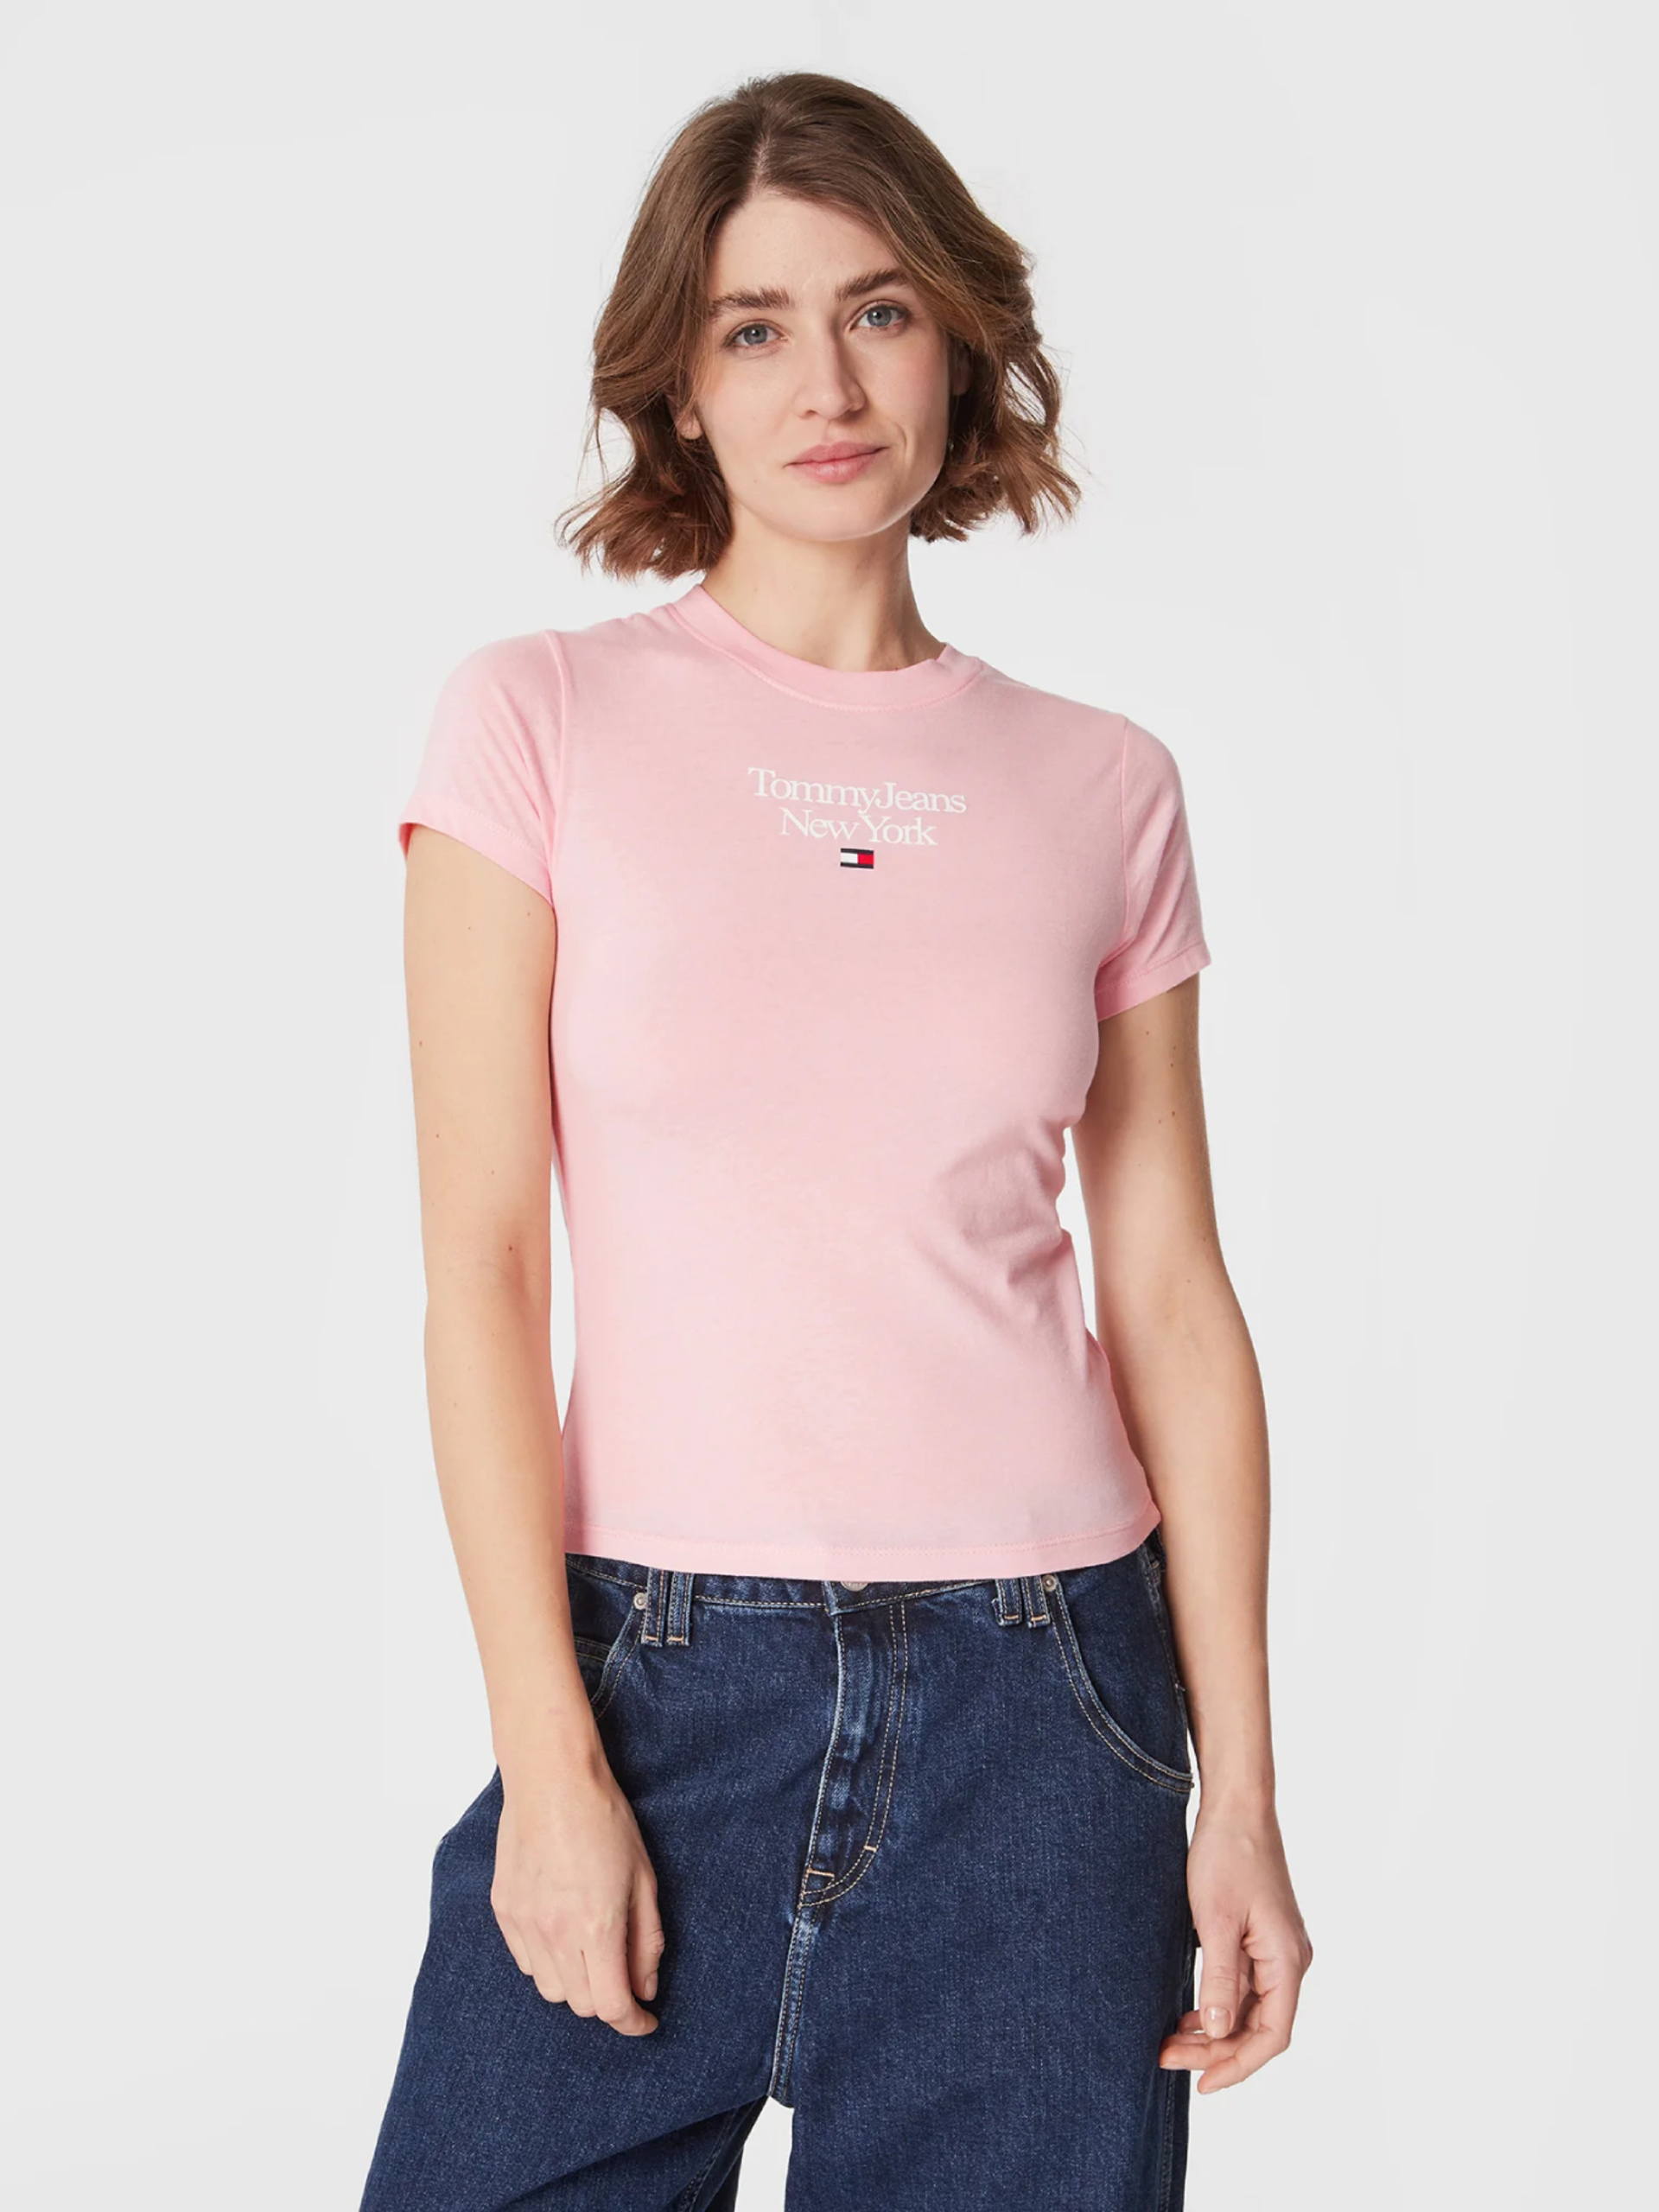 Tommy Jeans dámské růžové tričko ESSENTIAL LOGO - M (TG0)